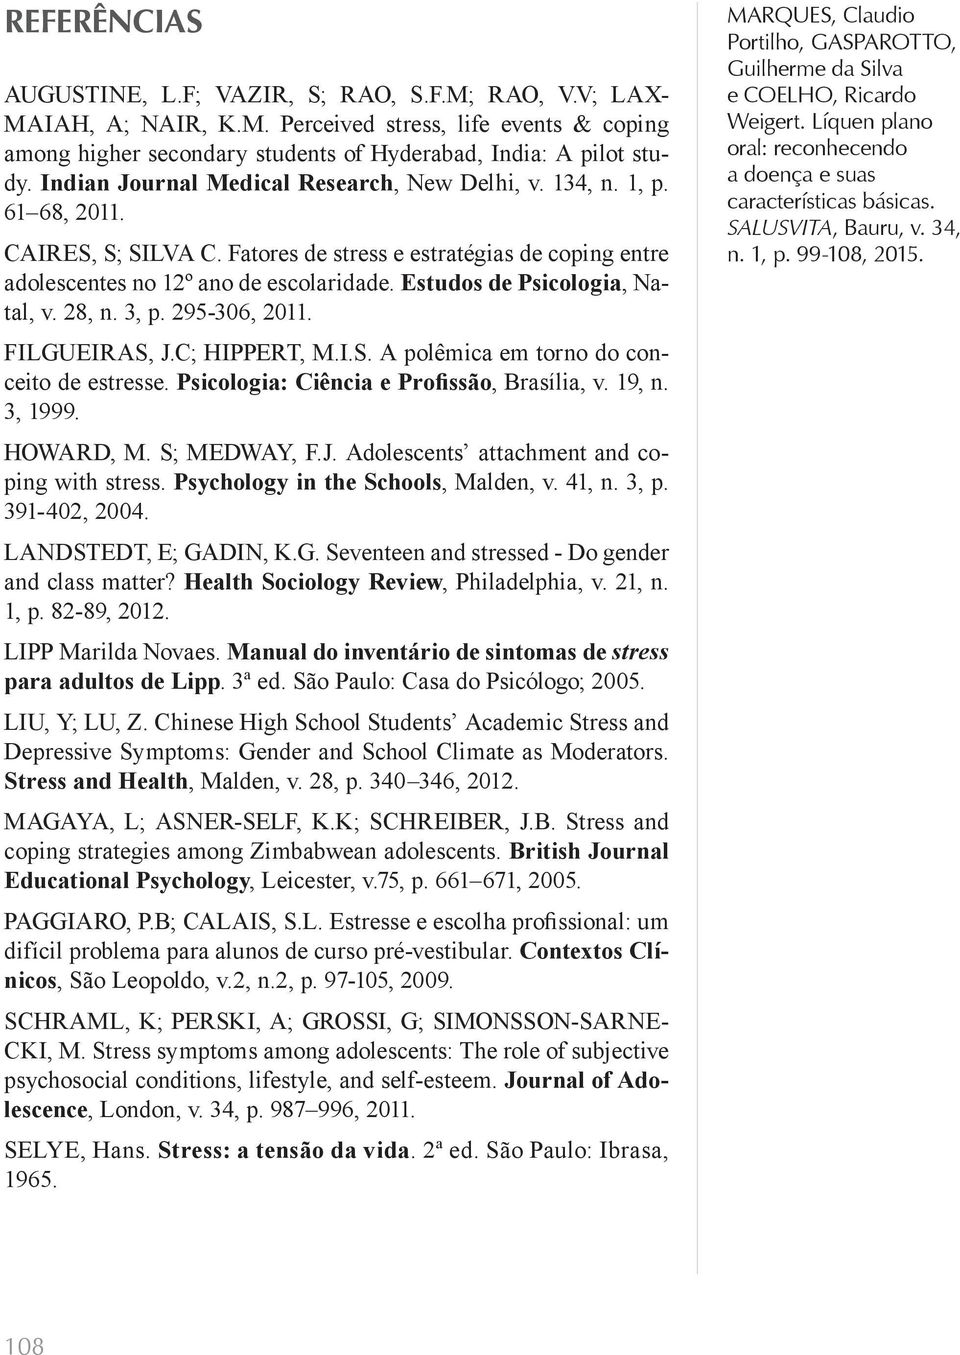 Estudos de Psicologia, Natal, v. 28, n. 3, p. 295-306, 2011. FILGUEIRAS, J.C; HIPPERT, M.I.S. A polêmica em torno do conceito de estresse. Psicologia: Ciência e Profissão, Brasília, v. 19, n. 3, 1999.